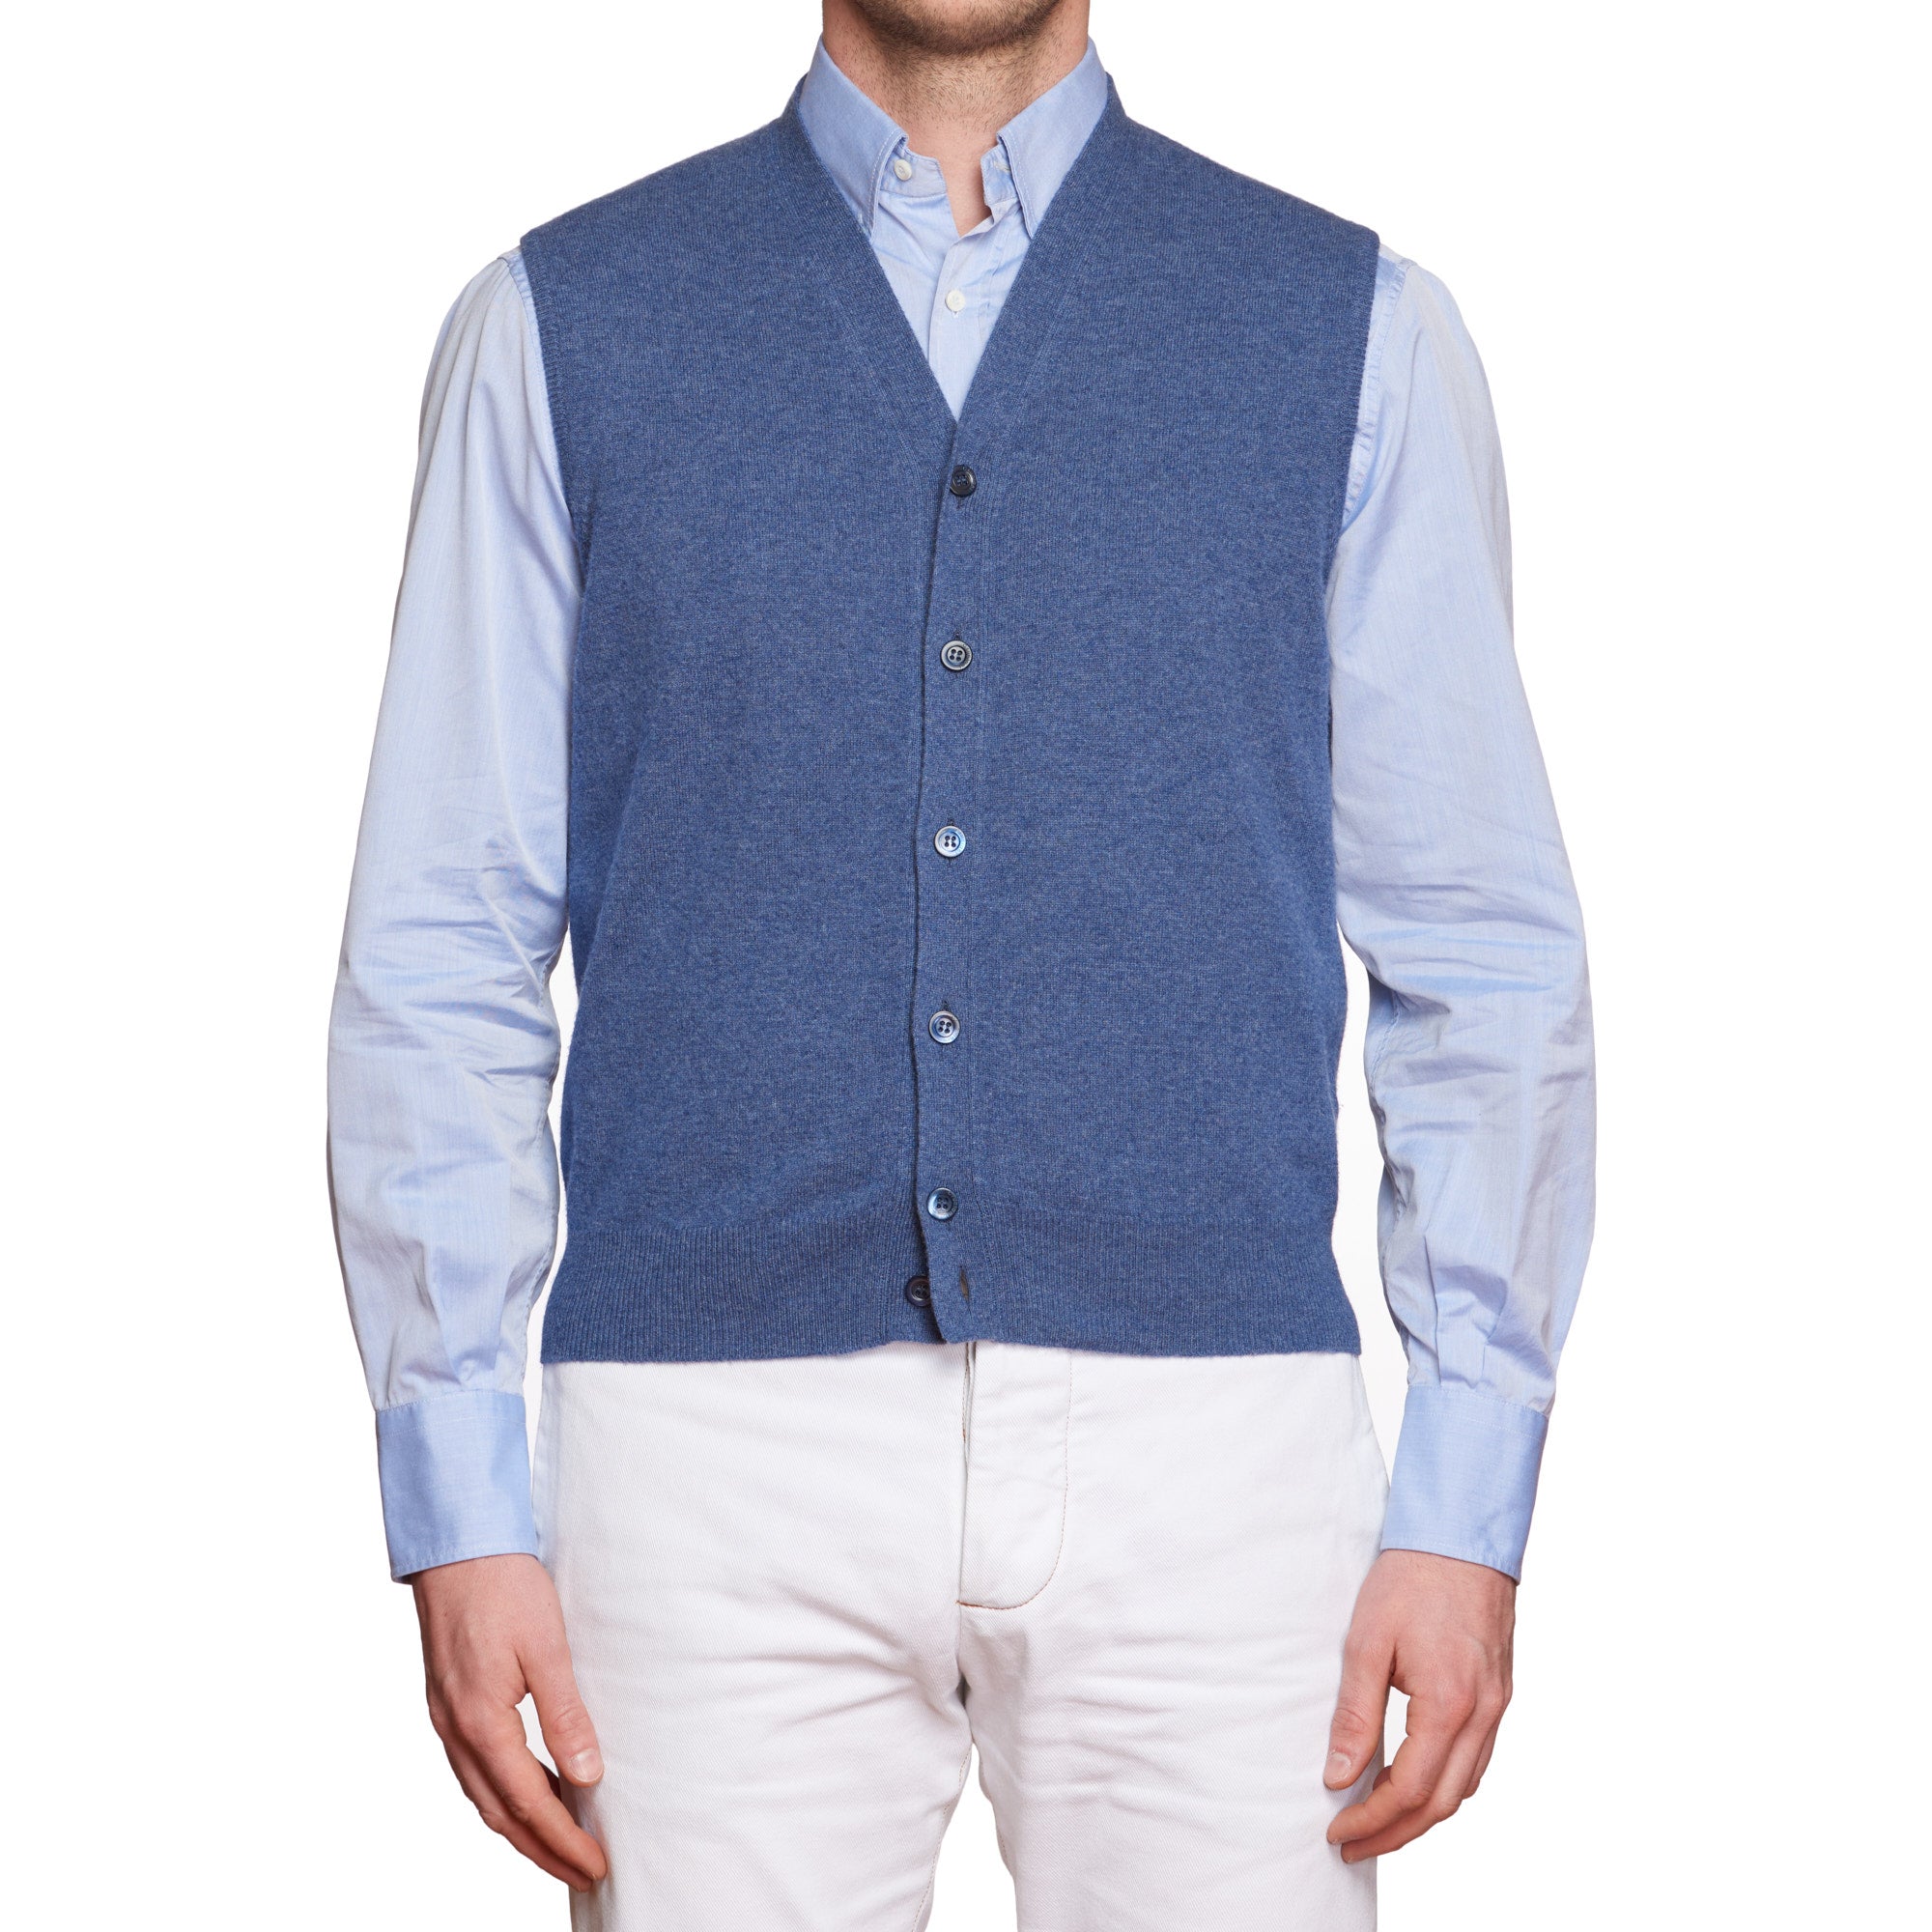 CRUCIANI Blue Cashmere Knit Sleeveless Cardigan Sweater Vest EU 50 NEW US M CRUCIANI